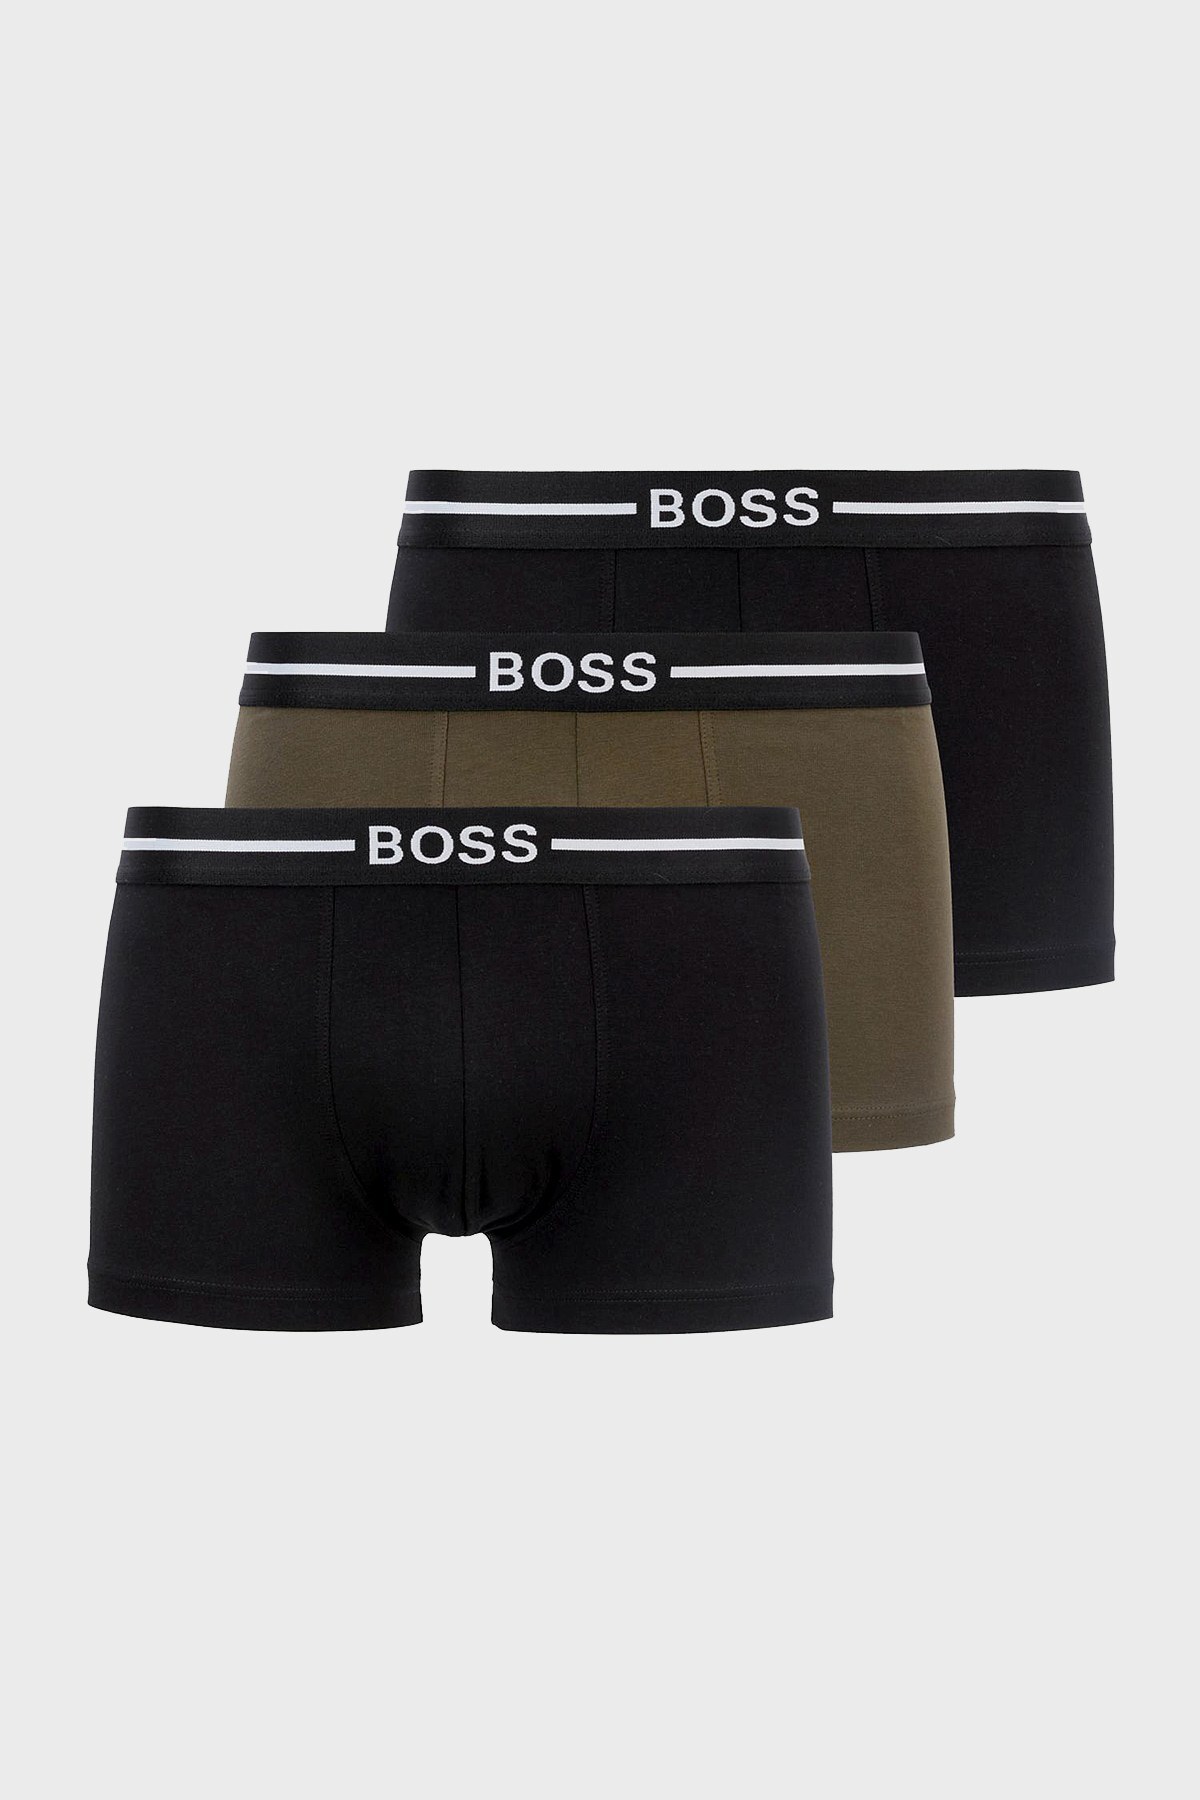 Hugo Boss 3 Pack Erkek Boxer 50451408 301 Haki-Siyah-Siyah